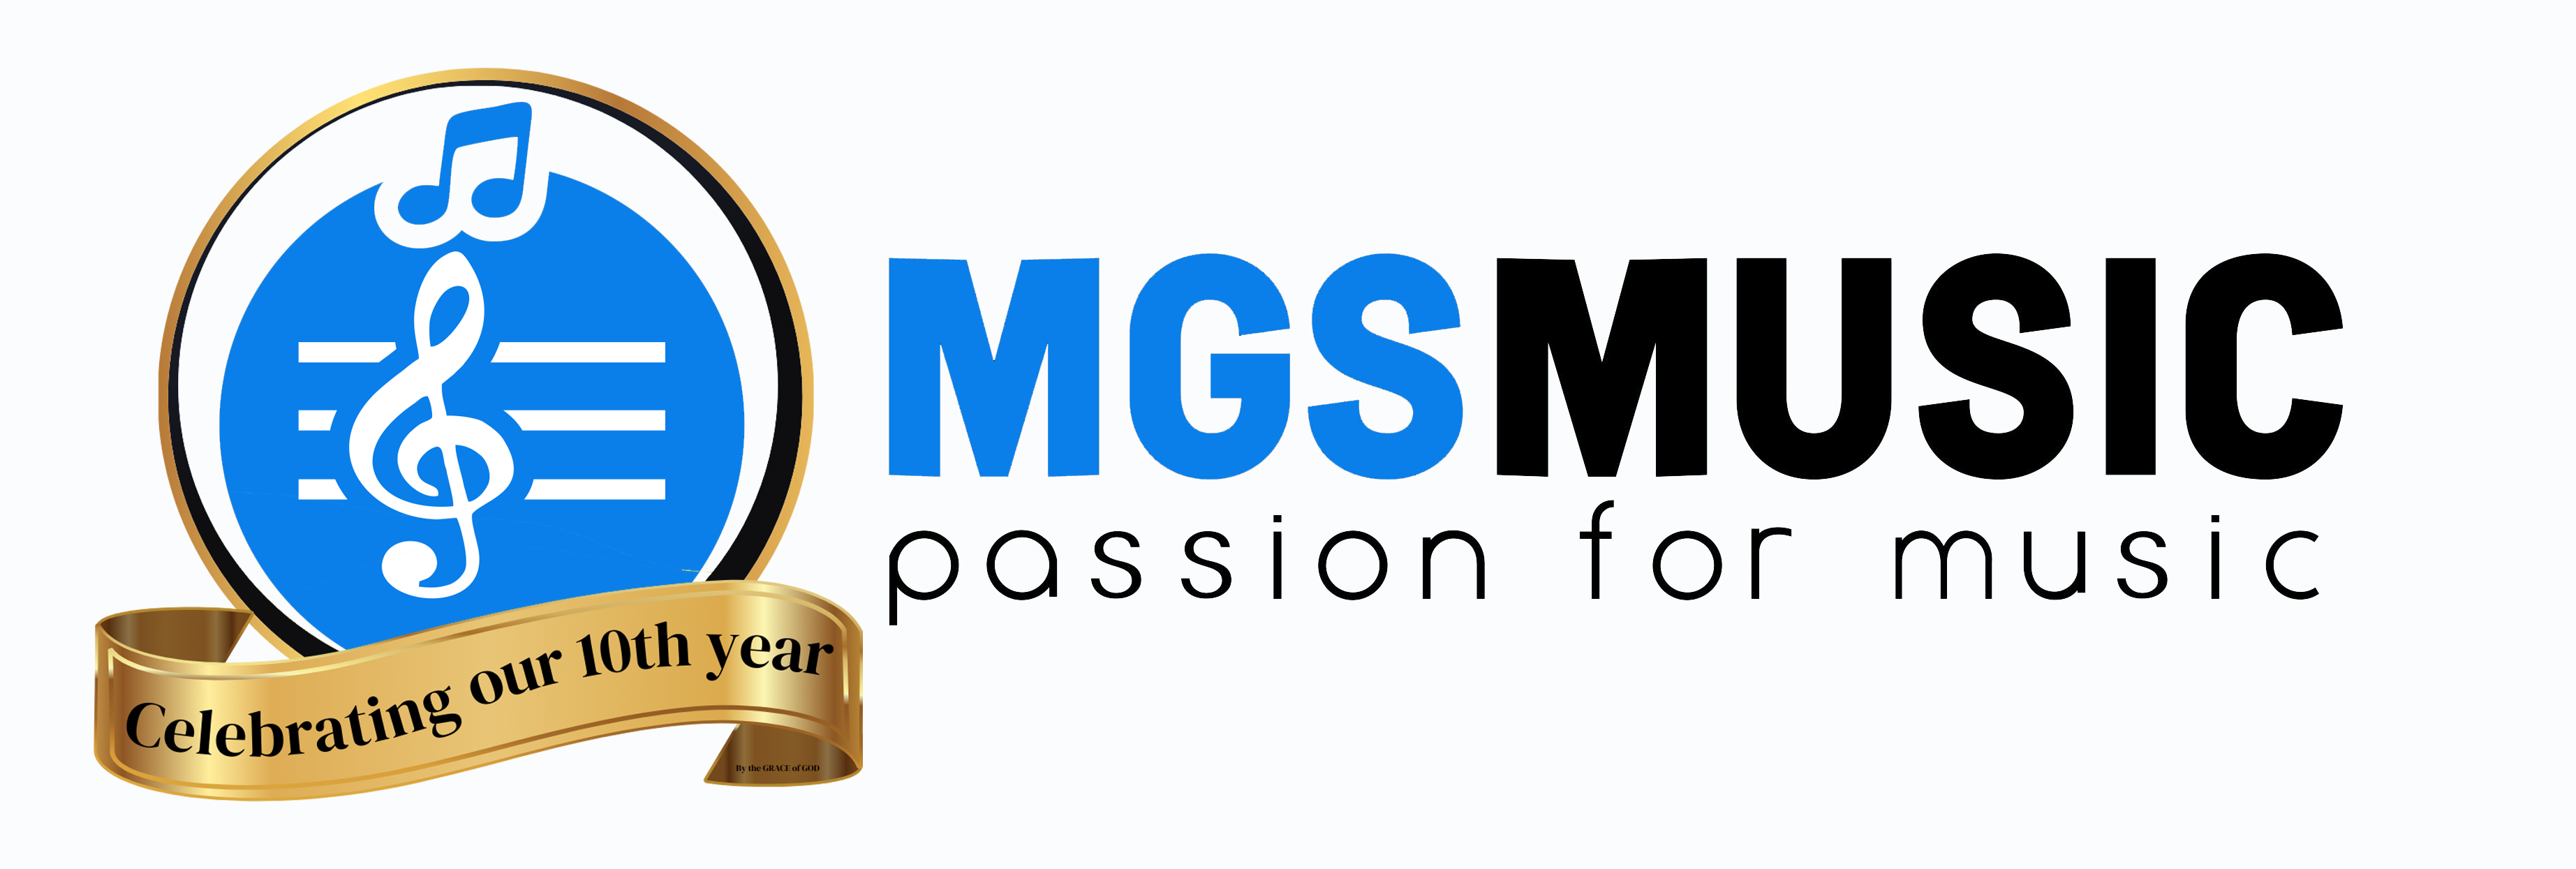 mgs music logo - white anniversary_